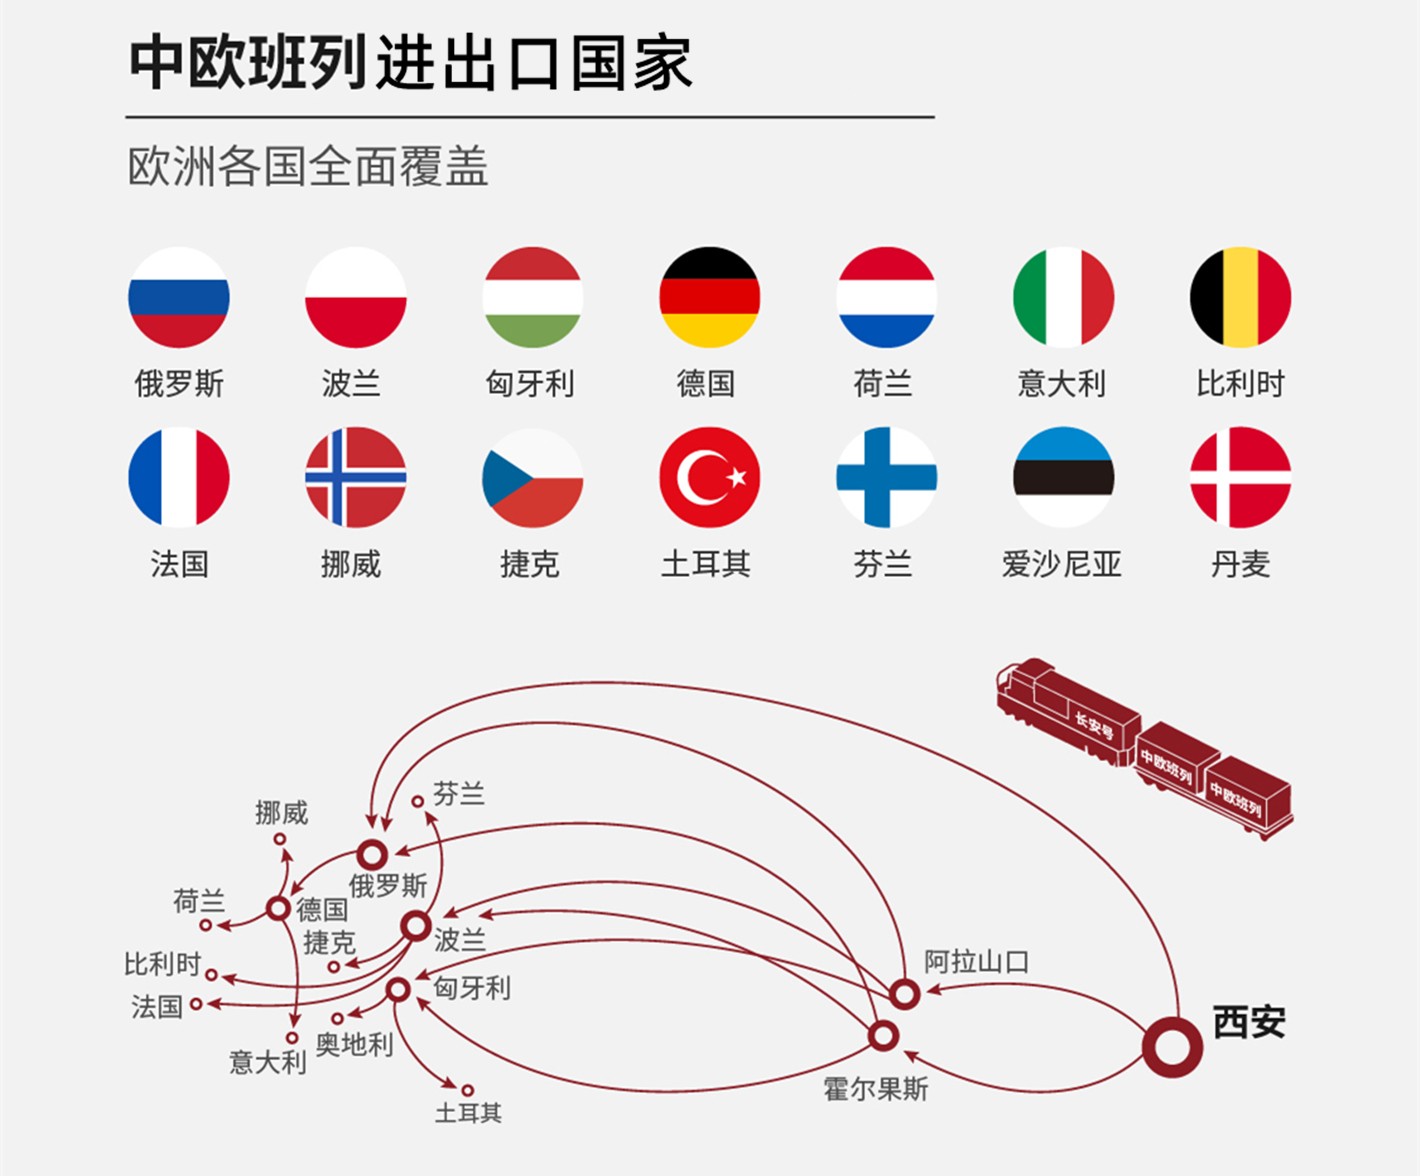 中欧铁运物流 中国到欧洲全境的铁路运输 中欧班列货运公司